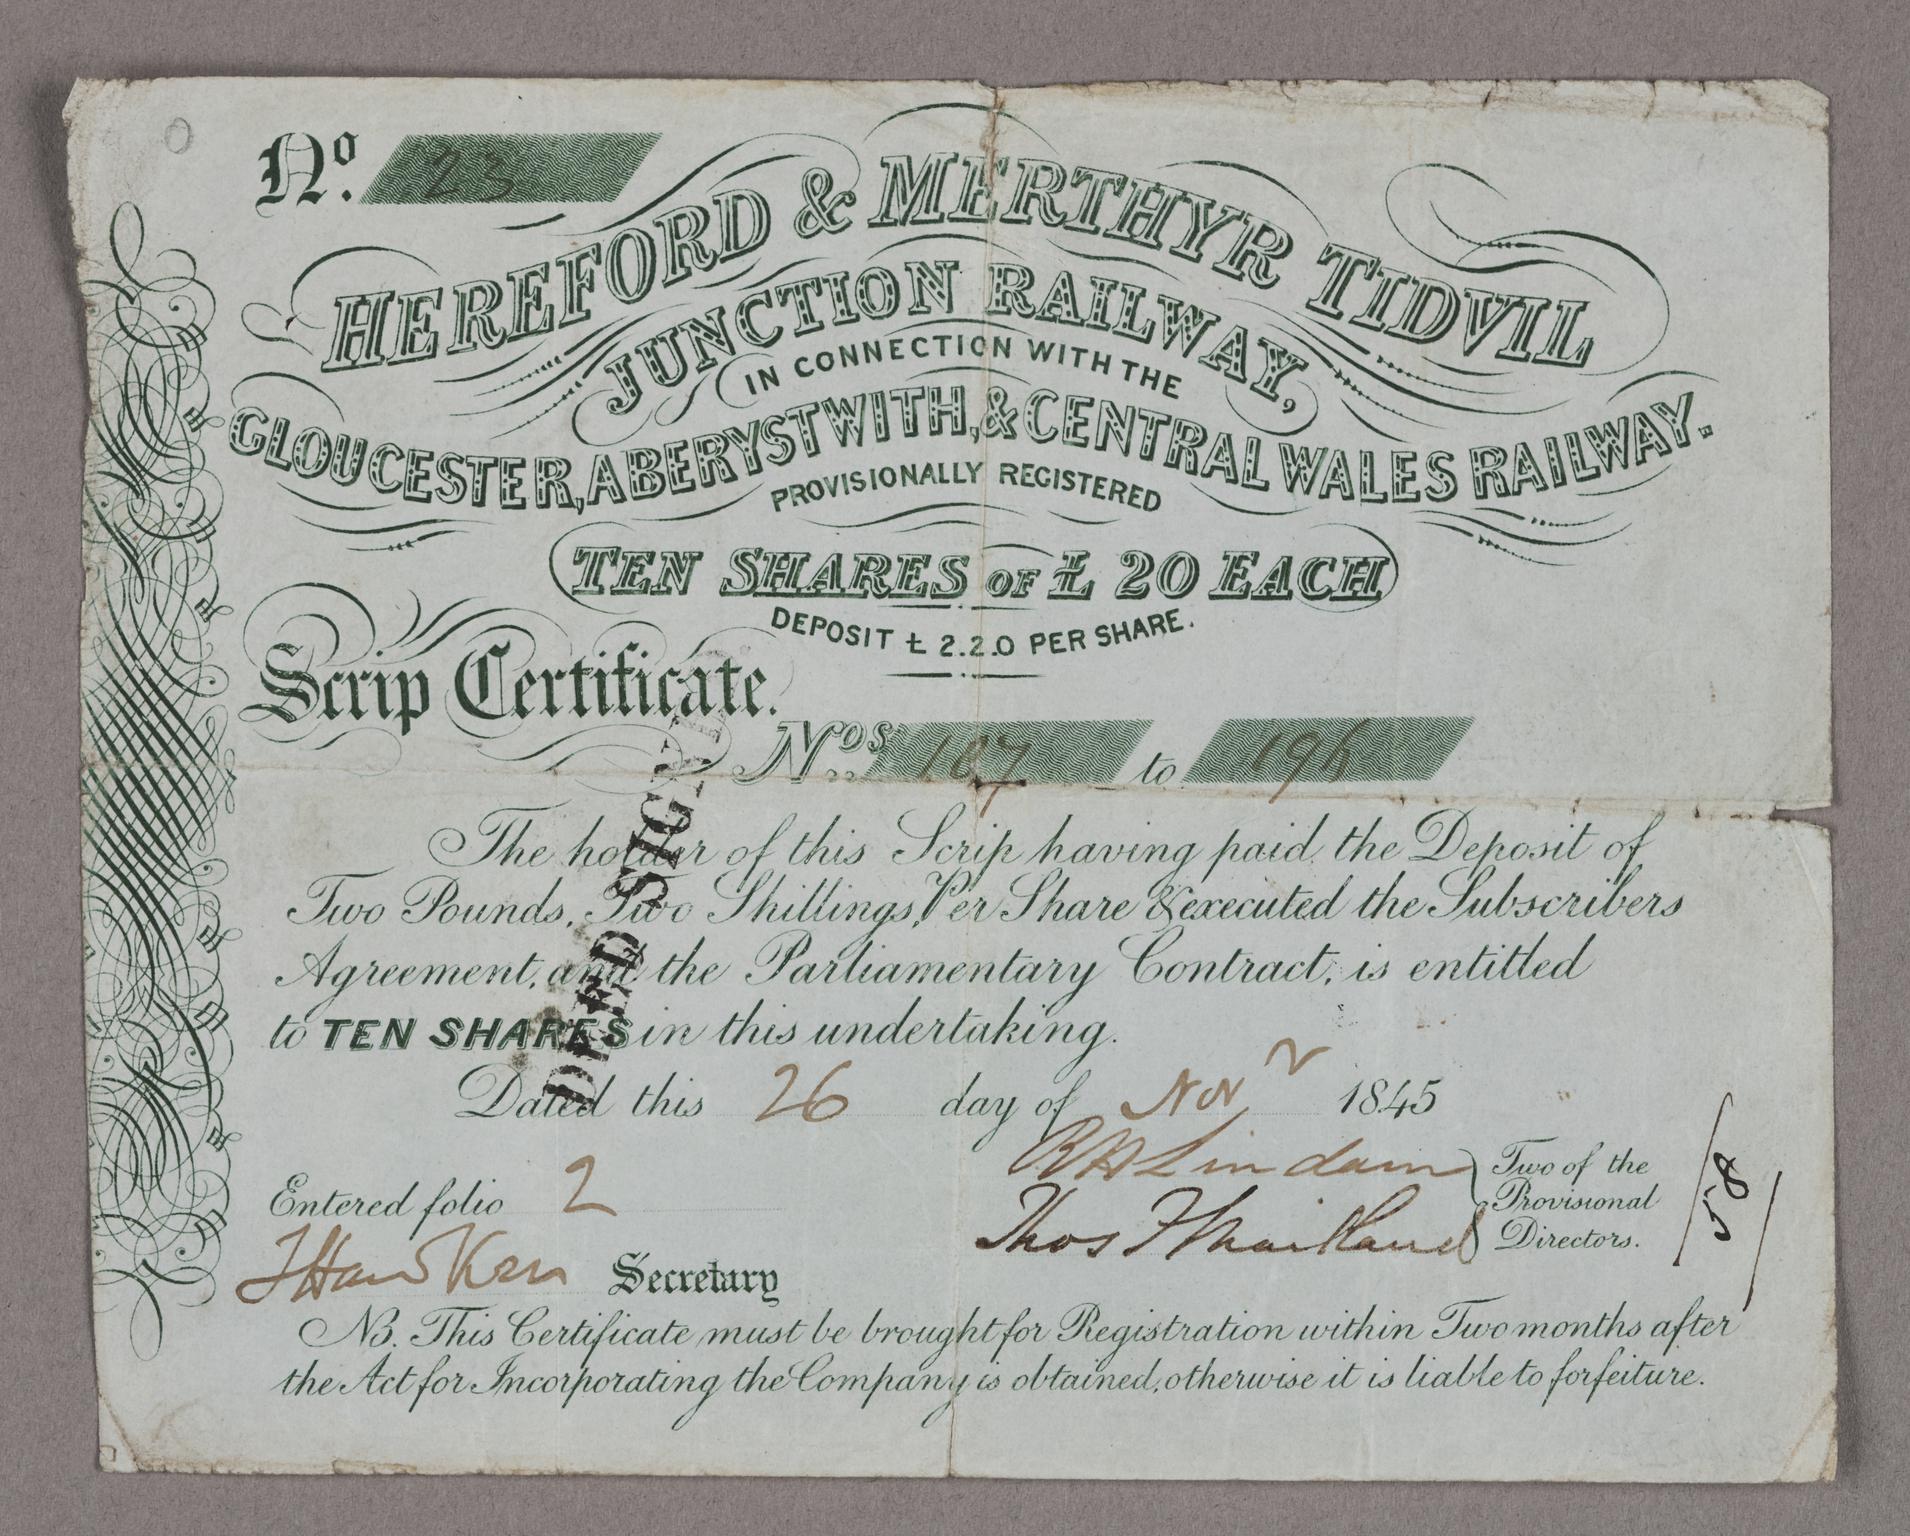 Hereford & Merthyr Tidvil Junction Rly, share certificate